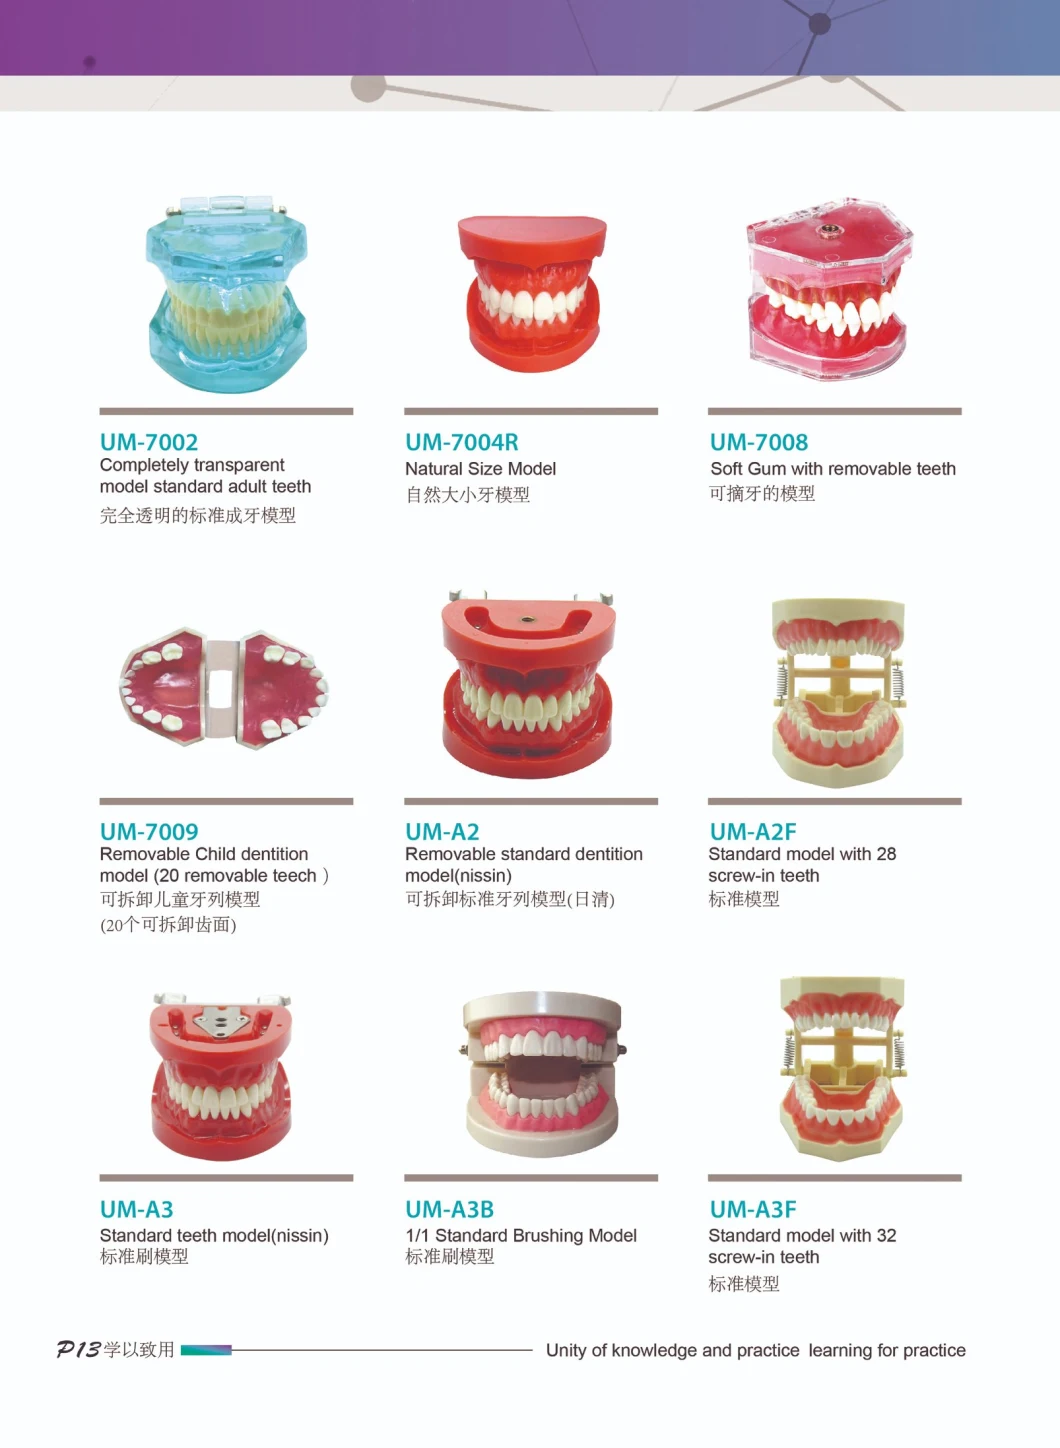 Completely Transparent Model/Standard Adult Teeth/Dental Care Models/Dental Study Model